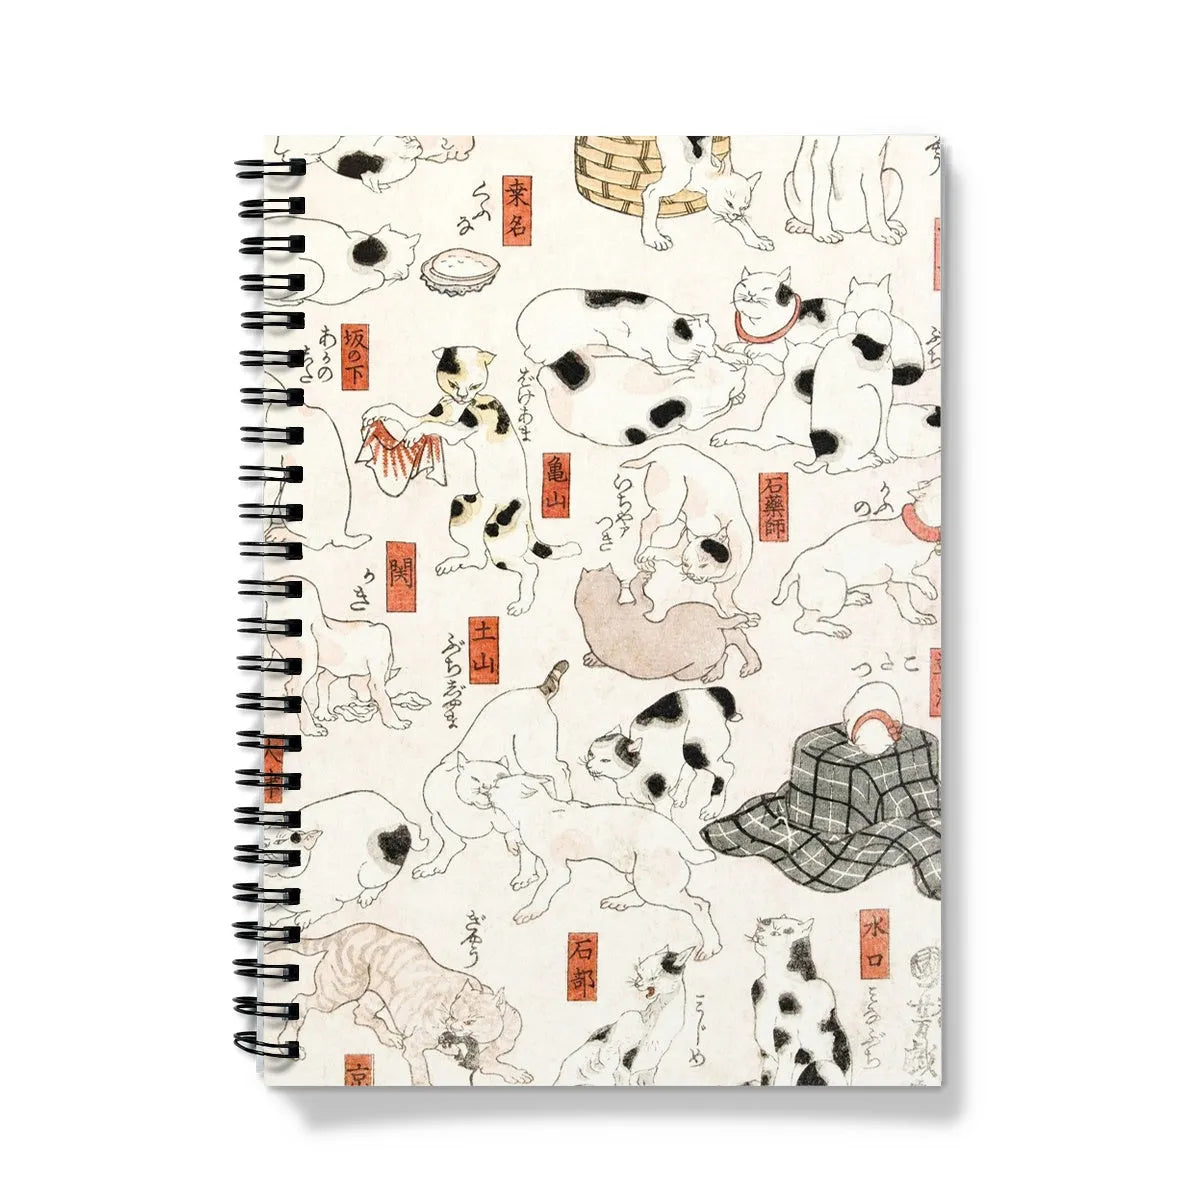 Cats - Utagawa Kuniyoshi Edo Era Ukiyo-e Notebook - A5 / Graph - Notebooks & Notepads - Aesthetic Art